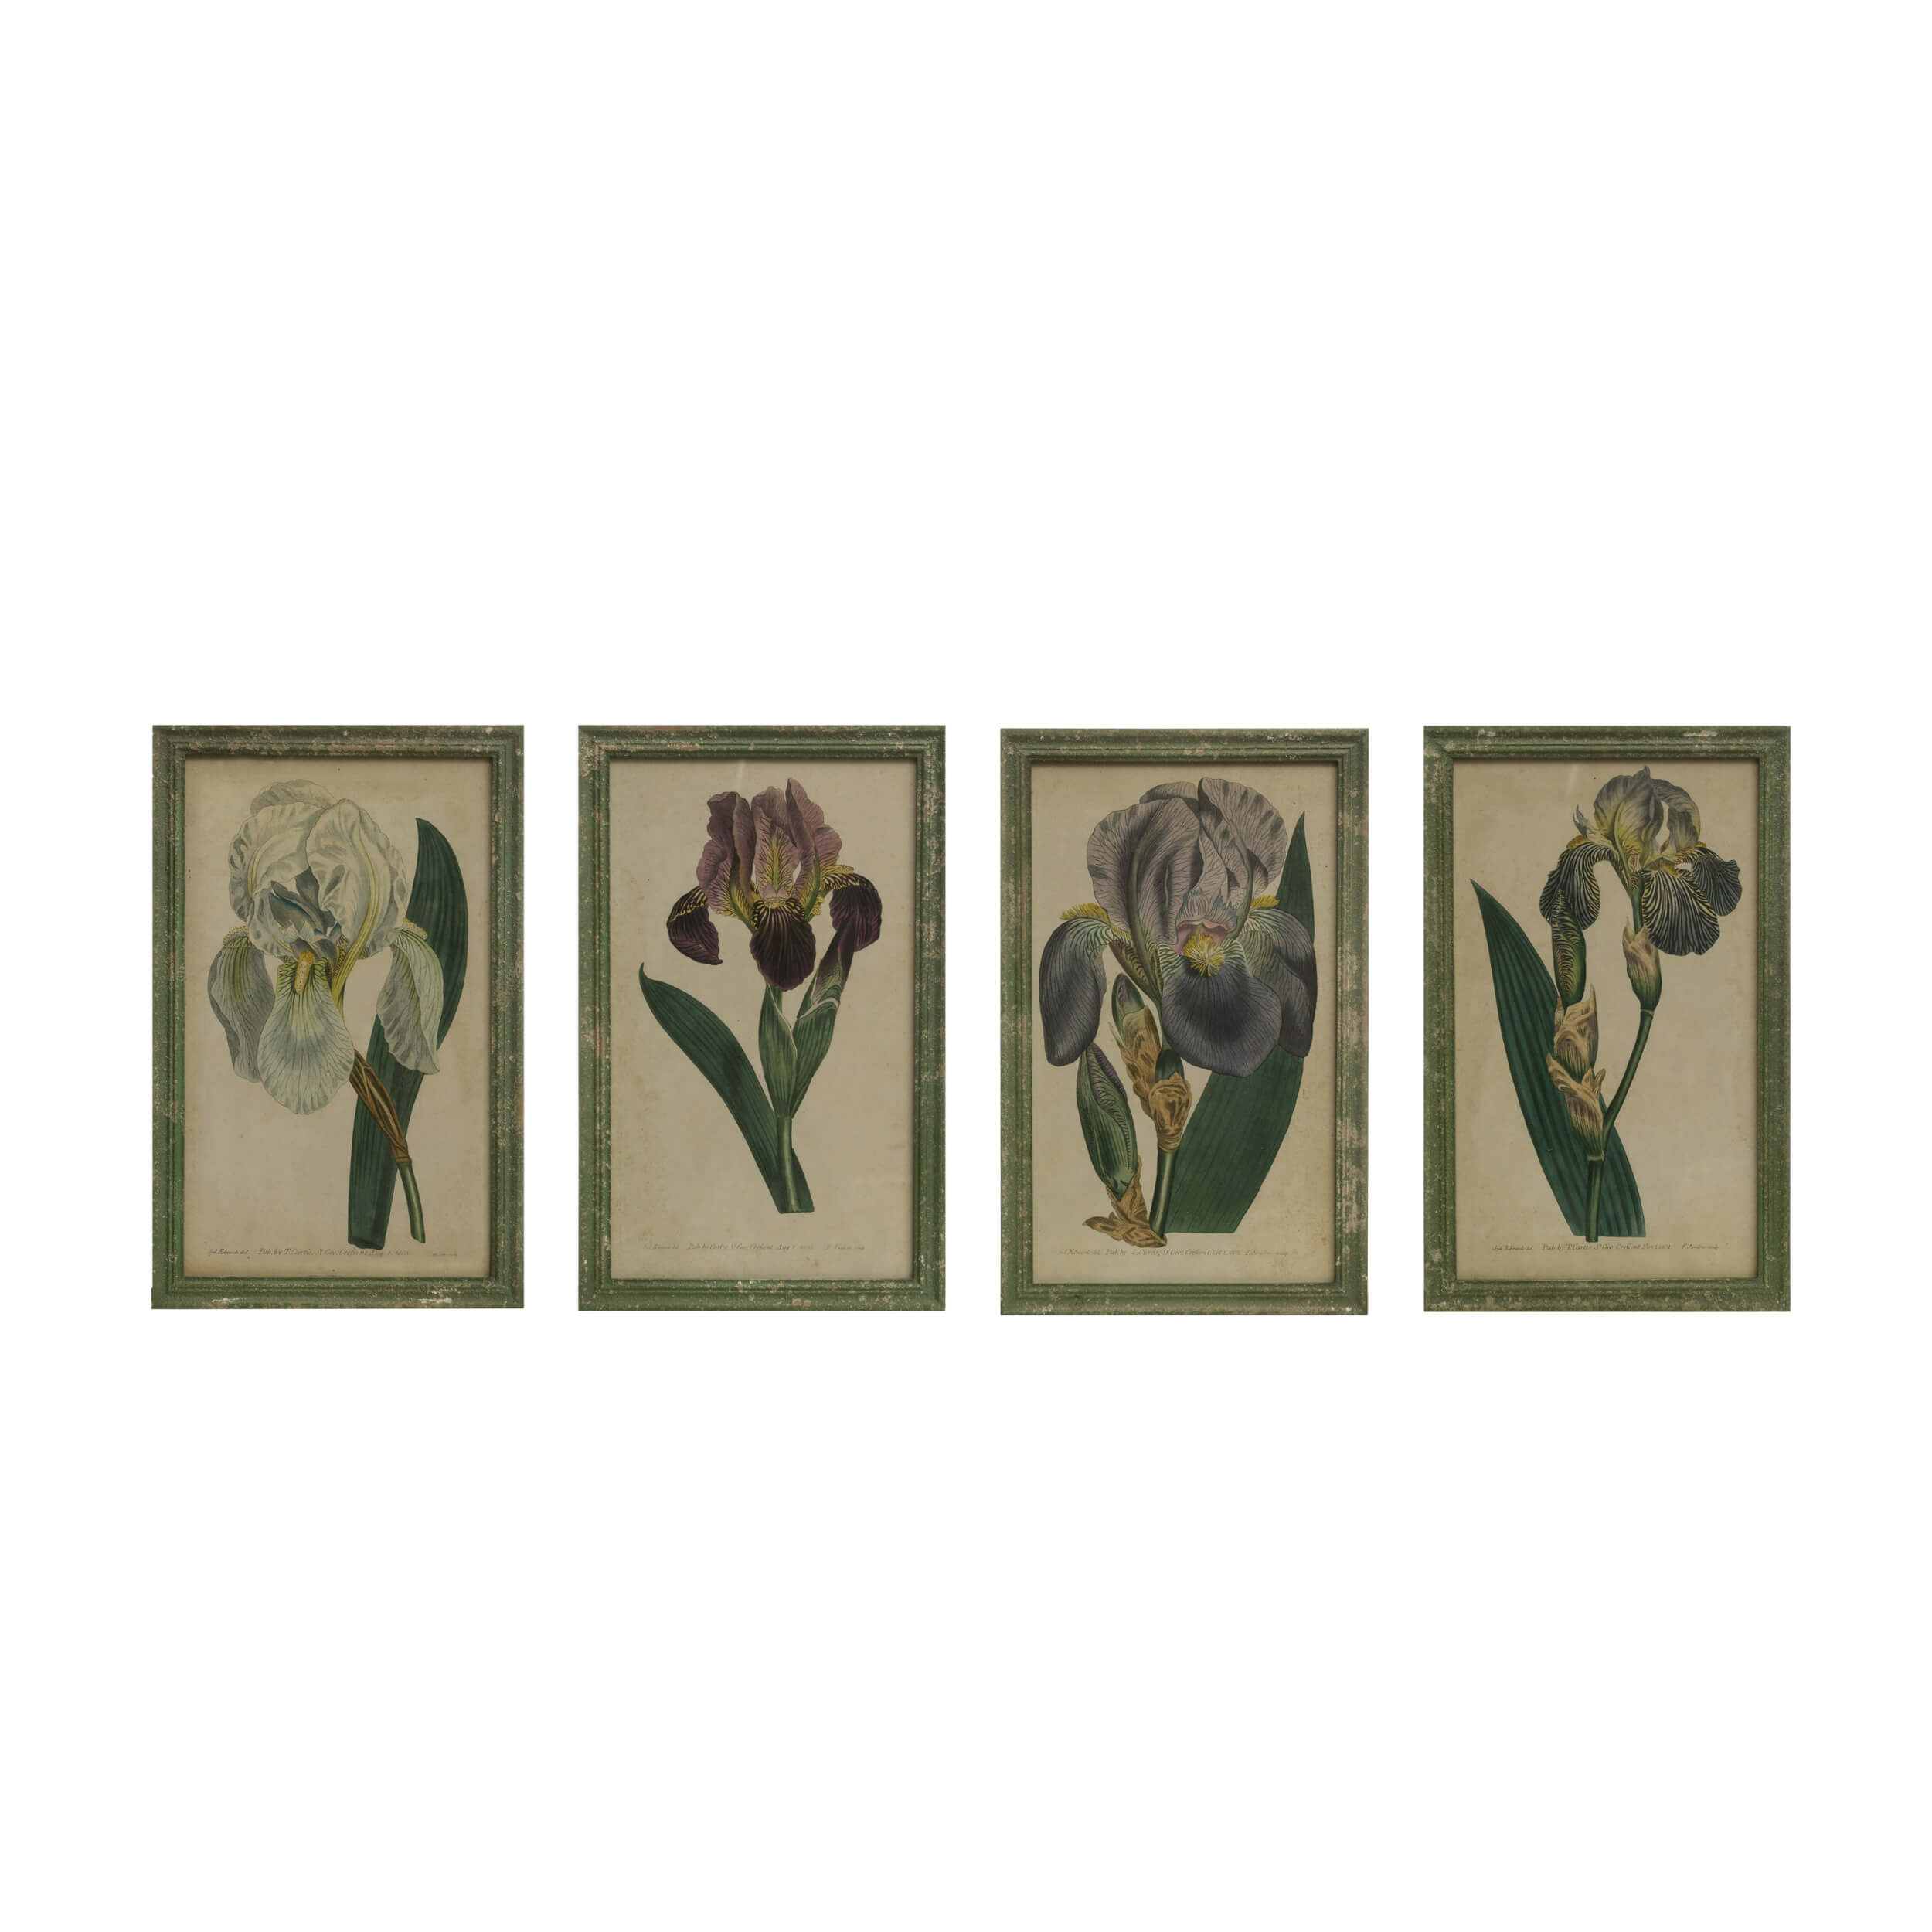 Distressed green wood framed prints of vintage inspired iris in bloom. 